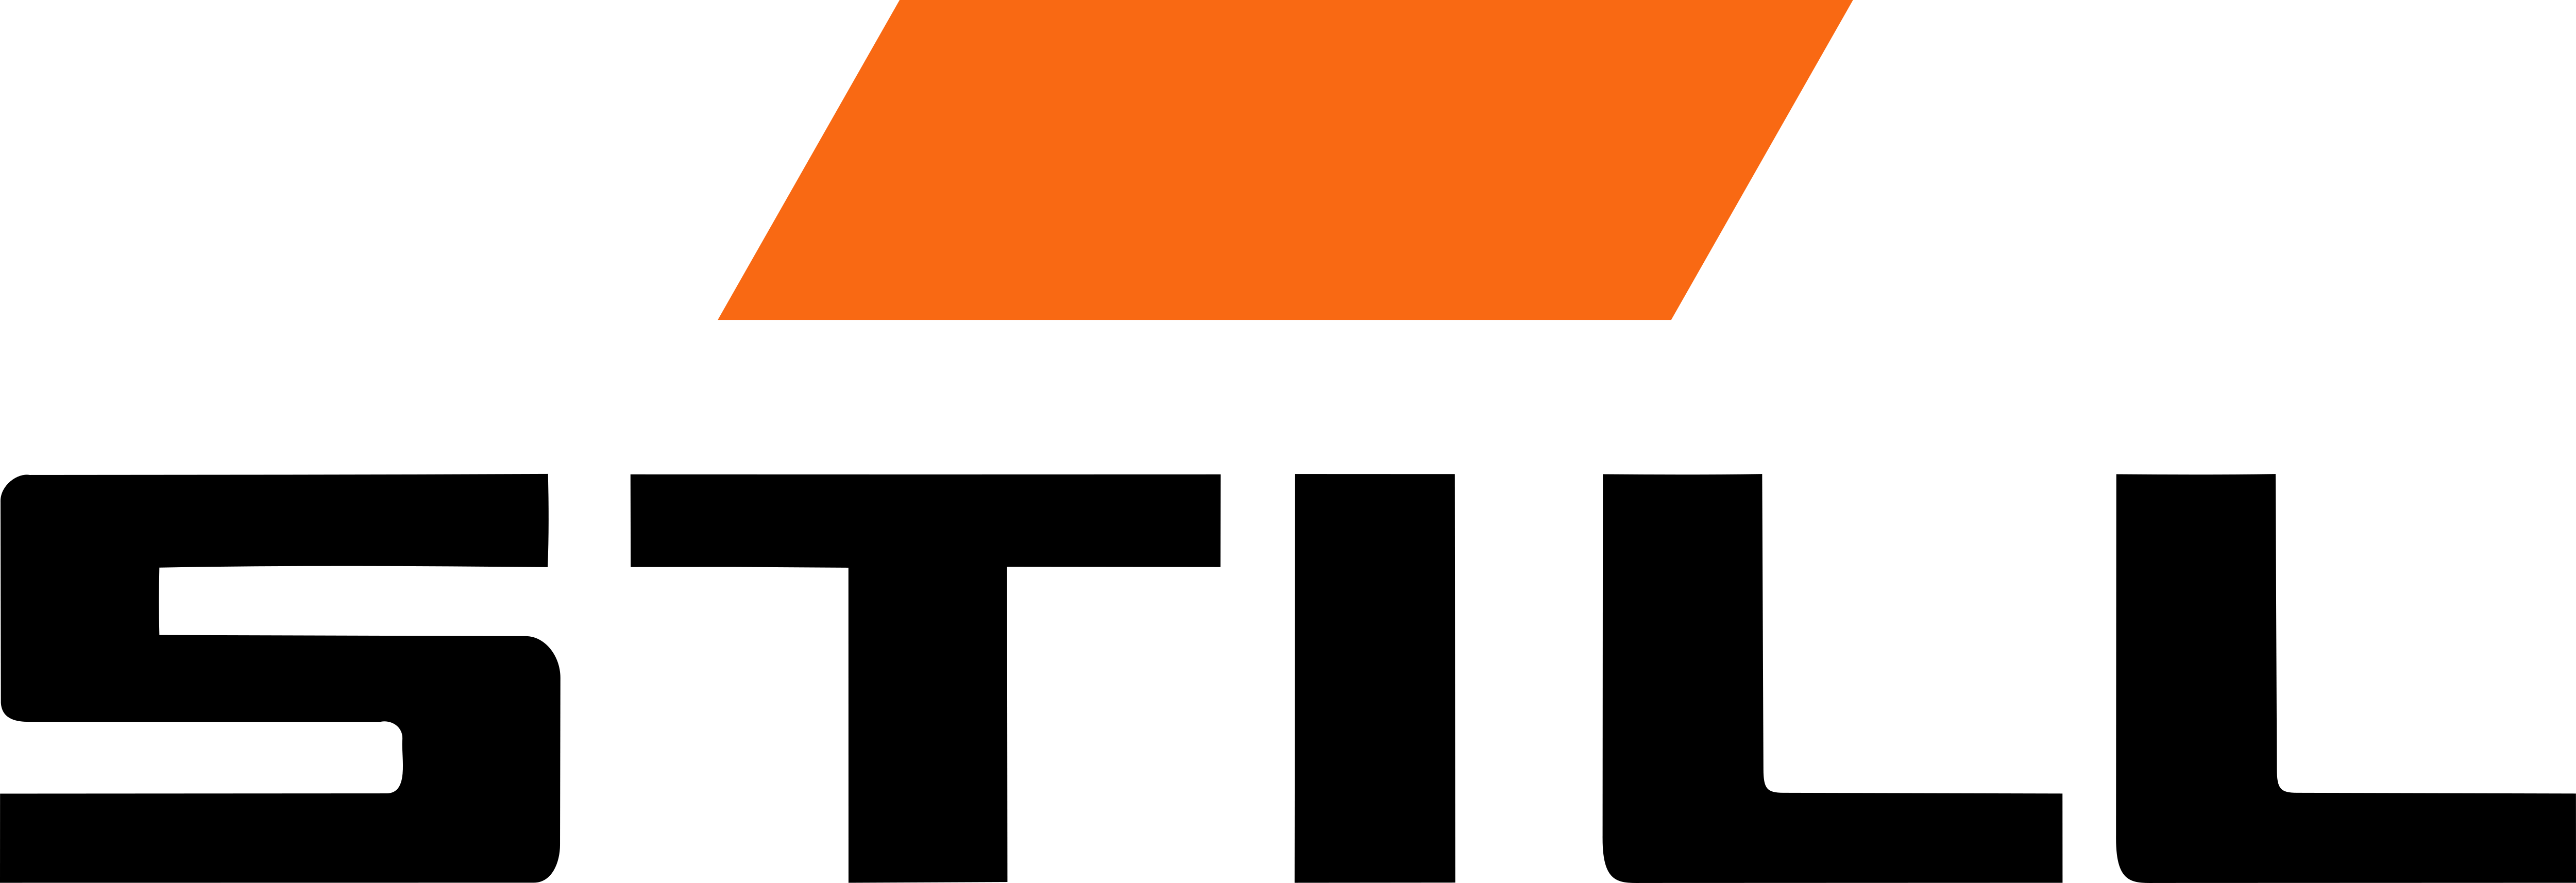 Logo Combilift